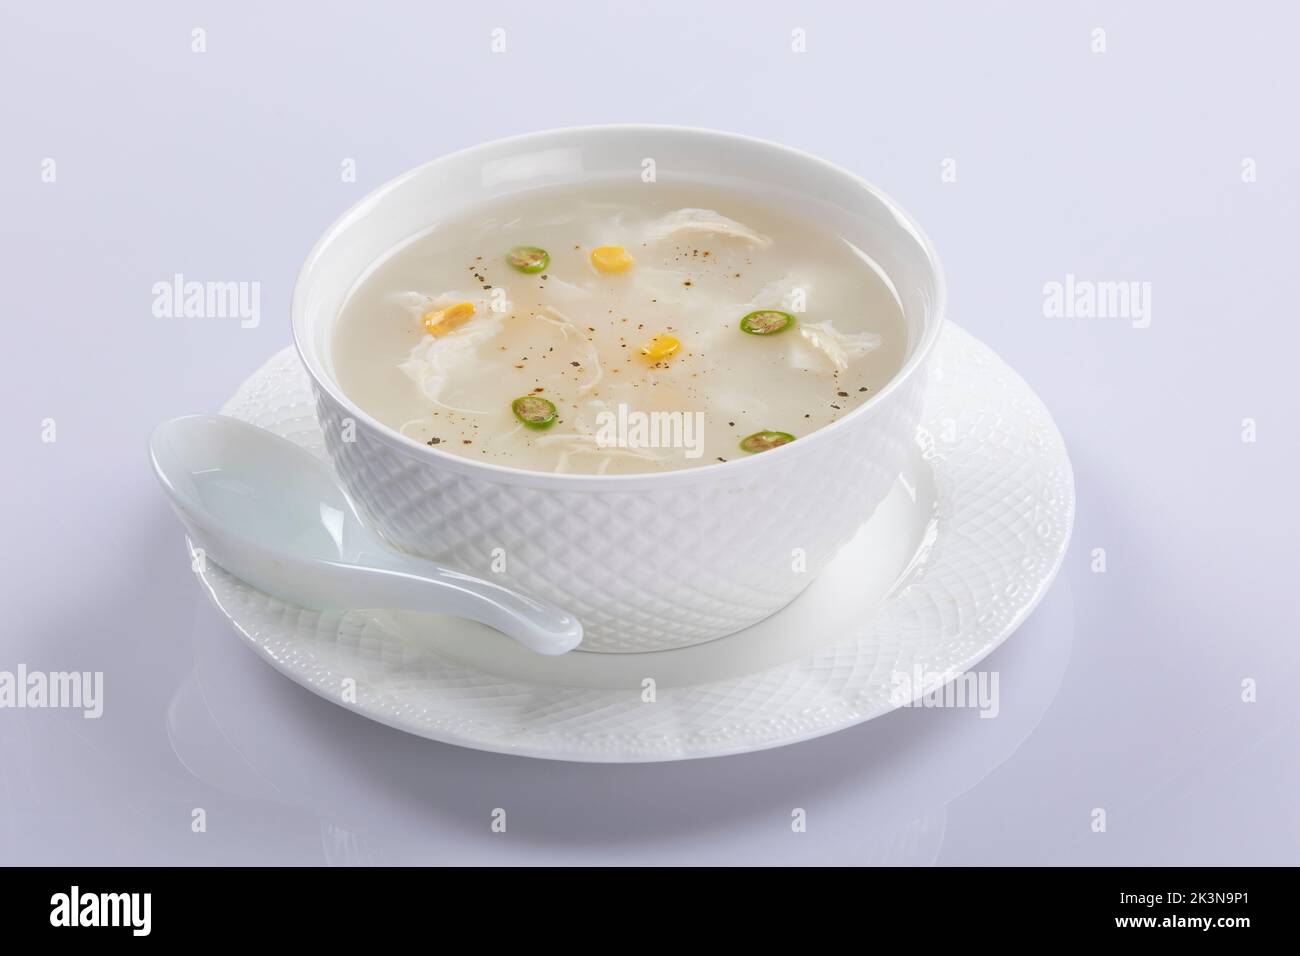 Soupe thaï de style bangladais, soupe de maïs au poulet isolée sur fond blanc. Banque D'Images